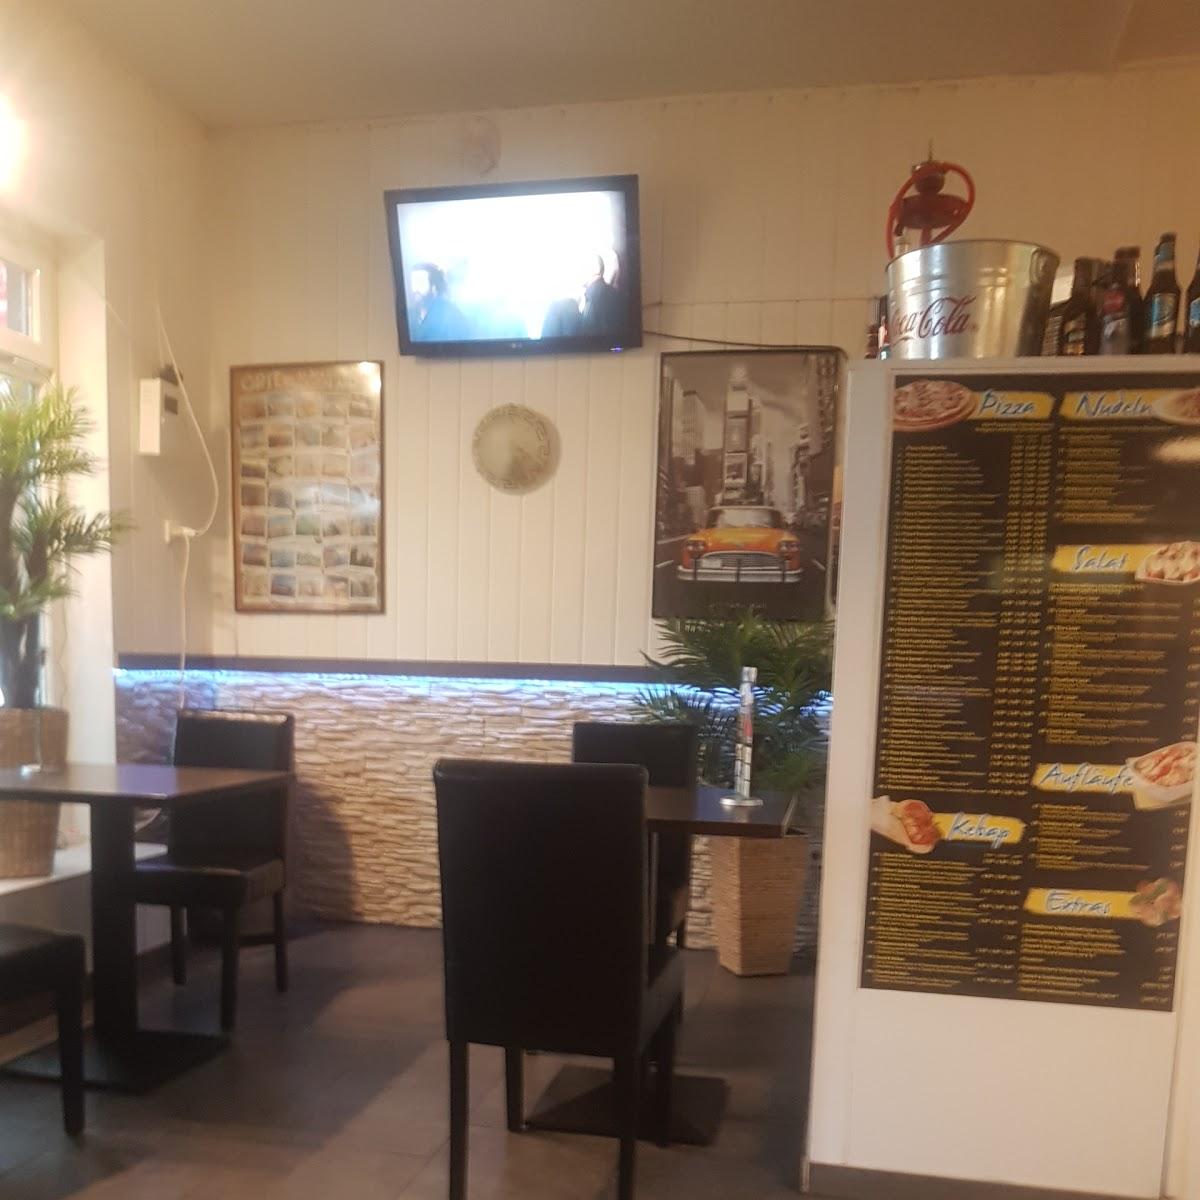 Restaurant "Pizzeria Efes" in Gronau (Westfalen)